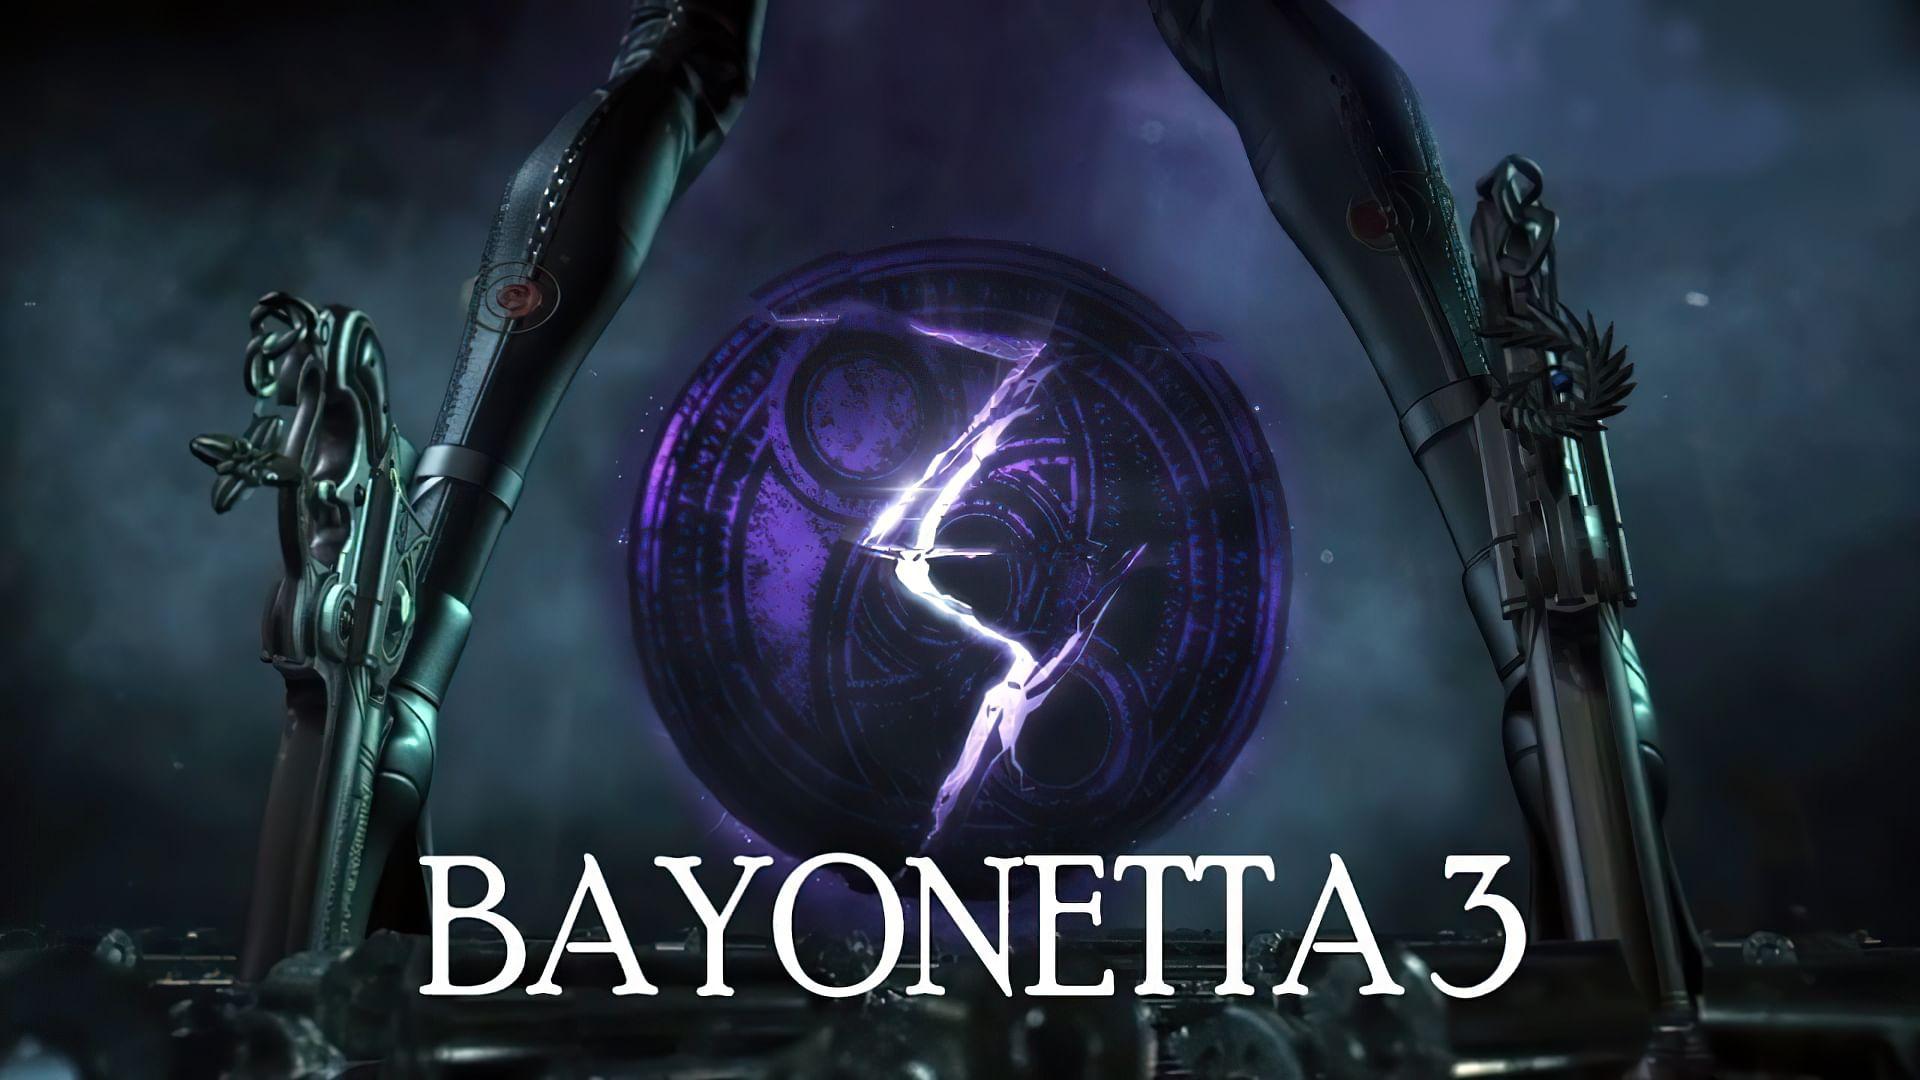 خلاصه اخبار روز: از معرفی مجدد Bayonetta 3 تا محتوای جدید The Last of Us